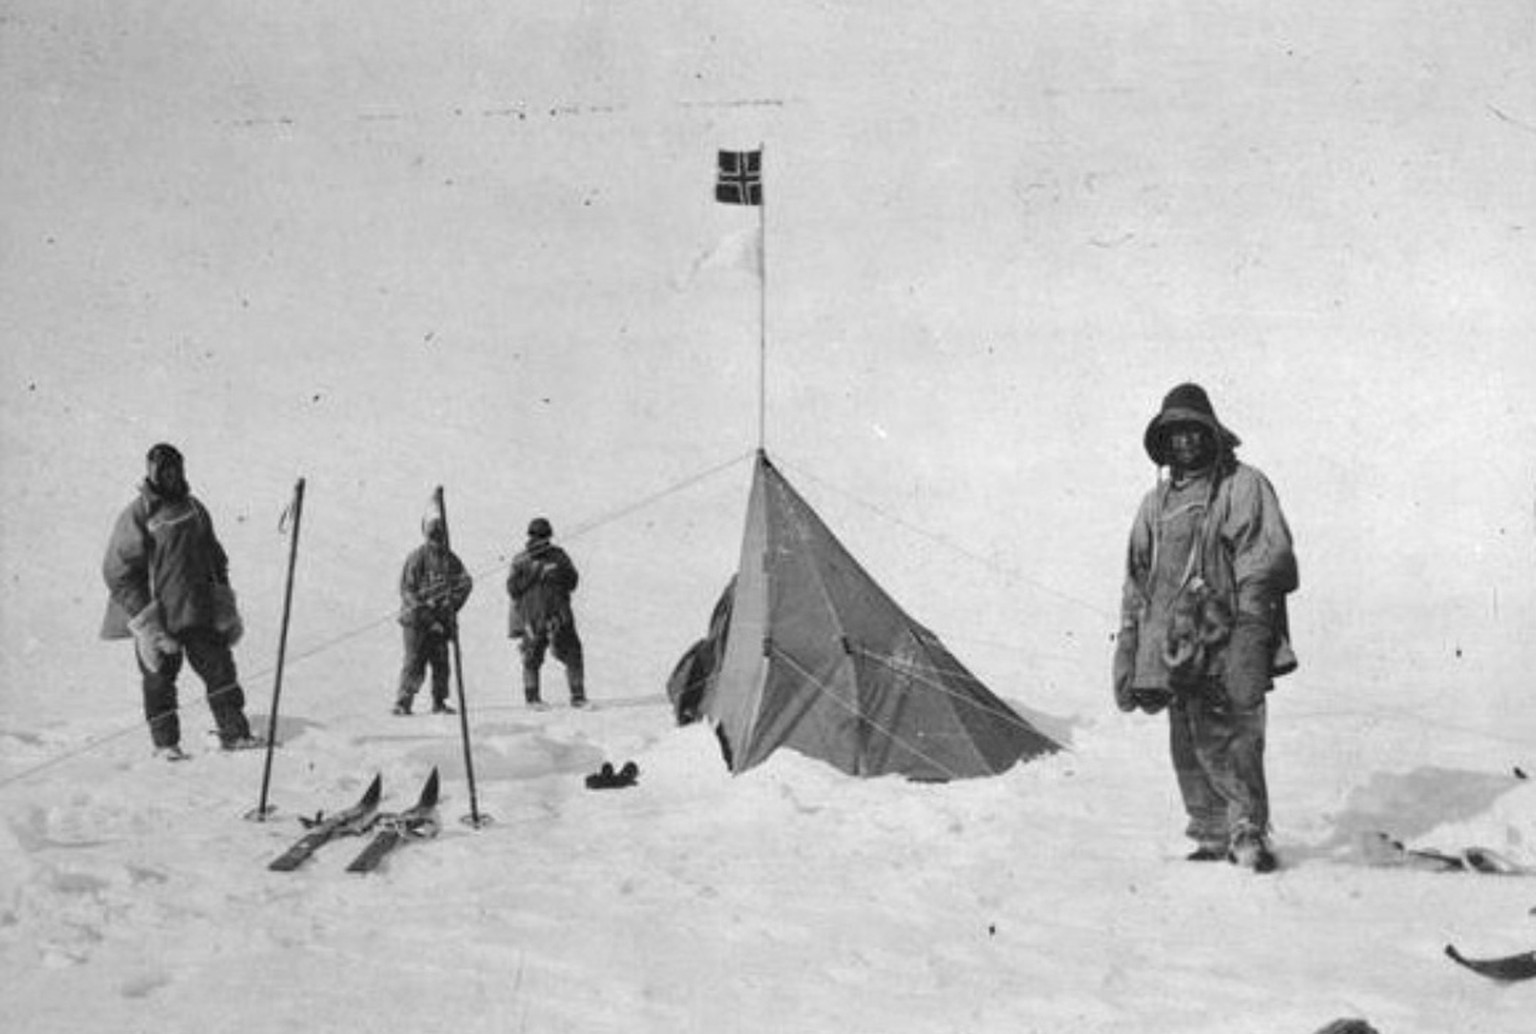 Scott und seine Männer erreichen Amundsens Basis am Pol. Von links nach rechts: Scott, Bowers, Wilson und Evans. Die Norweger erreichten ihr Ziel bereits einen Monat zuvor am 14. Dezember 1911.